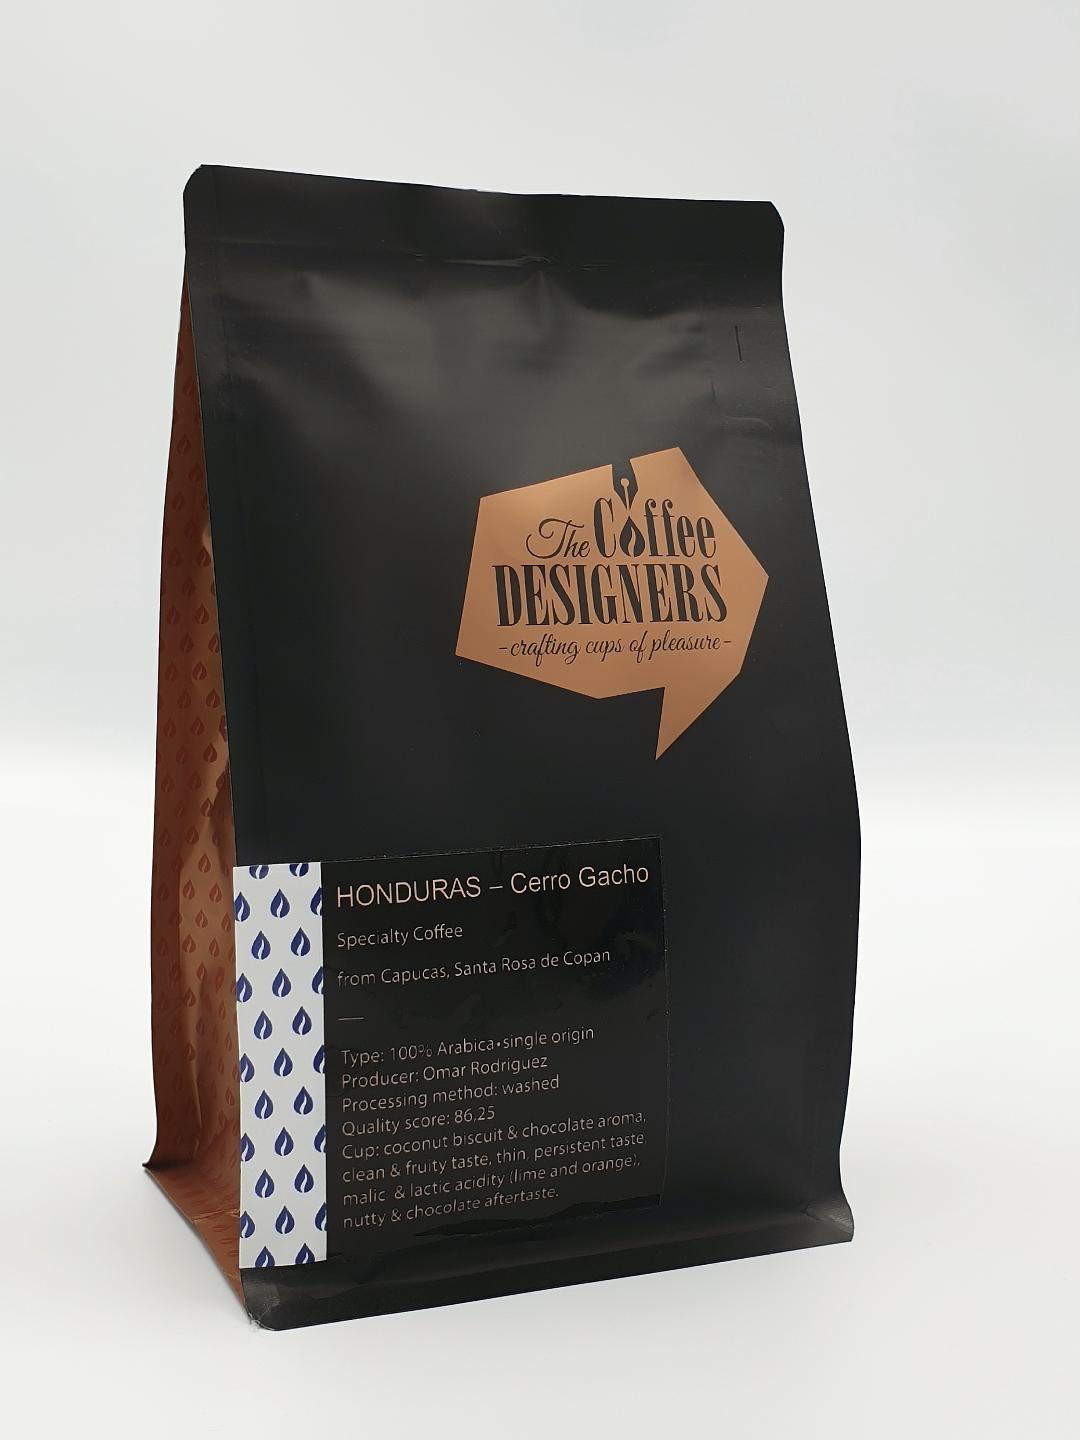 Cafea-de-specialitate-Honduras-Cerro-Gacho-Coffee-Designers